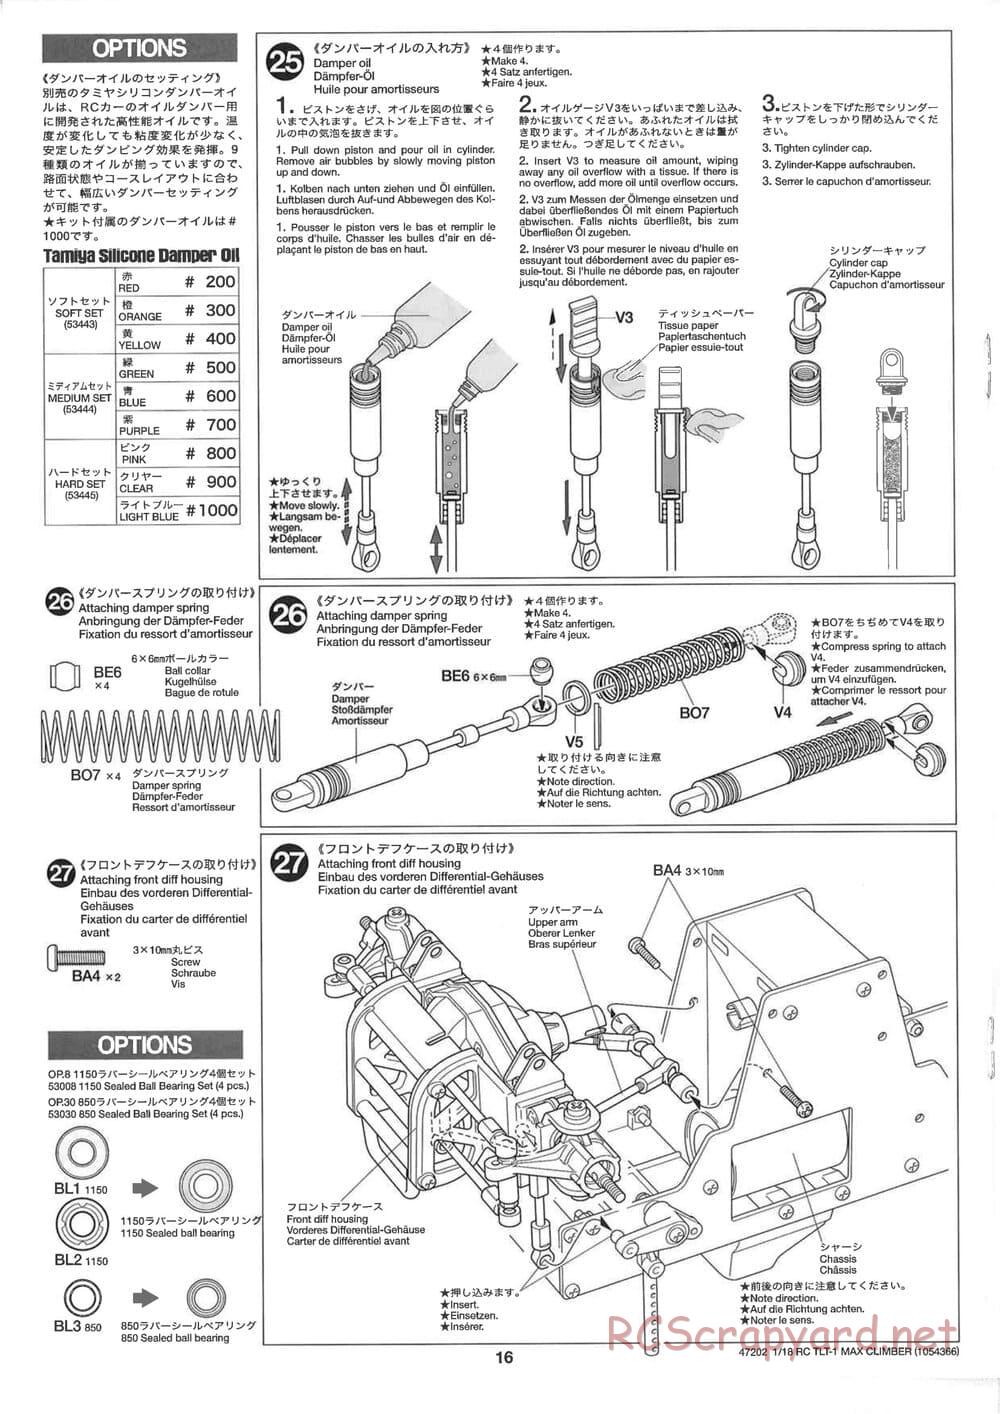 Tamiya - Max Climber - TLT-1 Chassis - Manual - Page 16